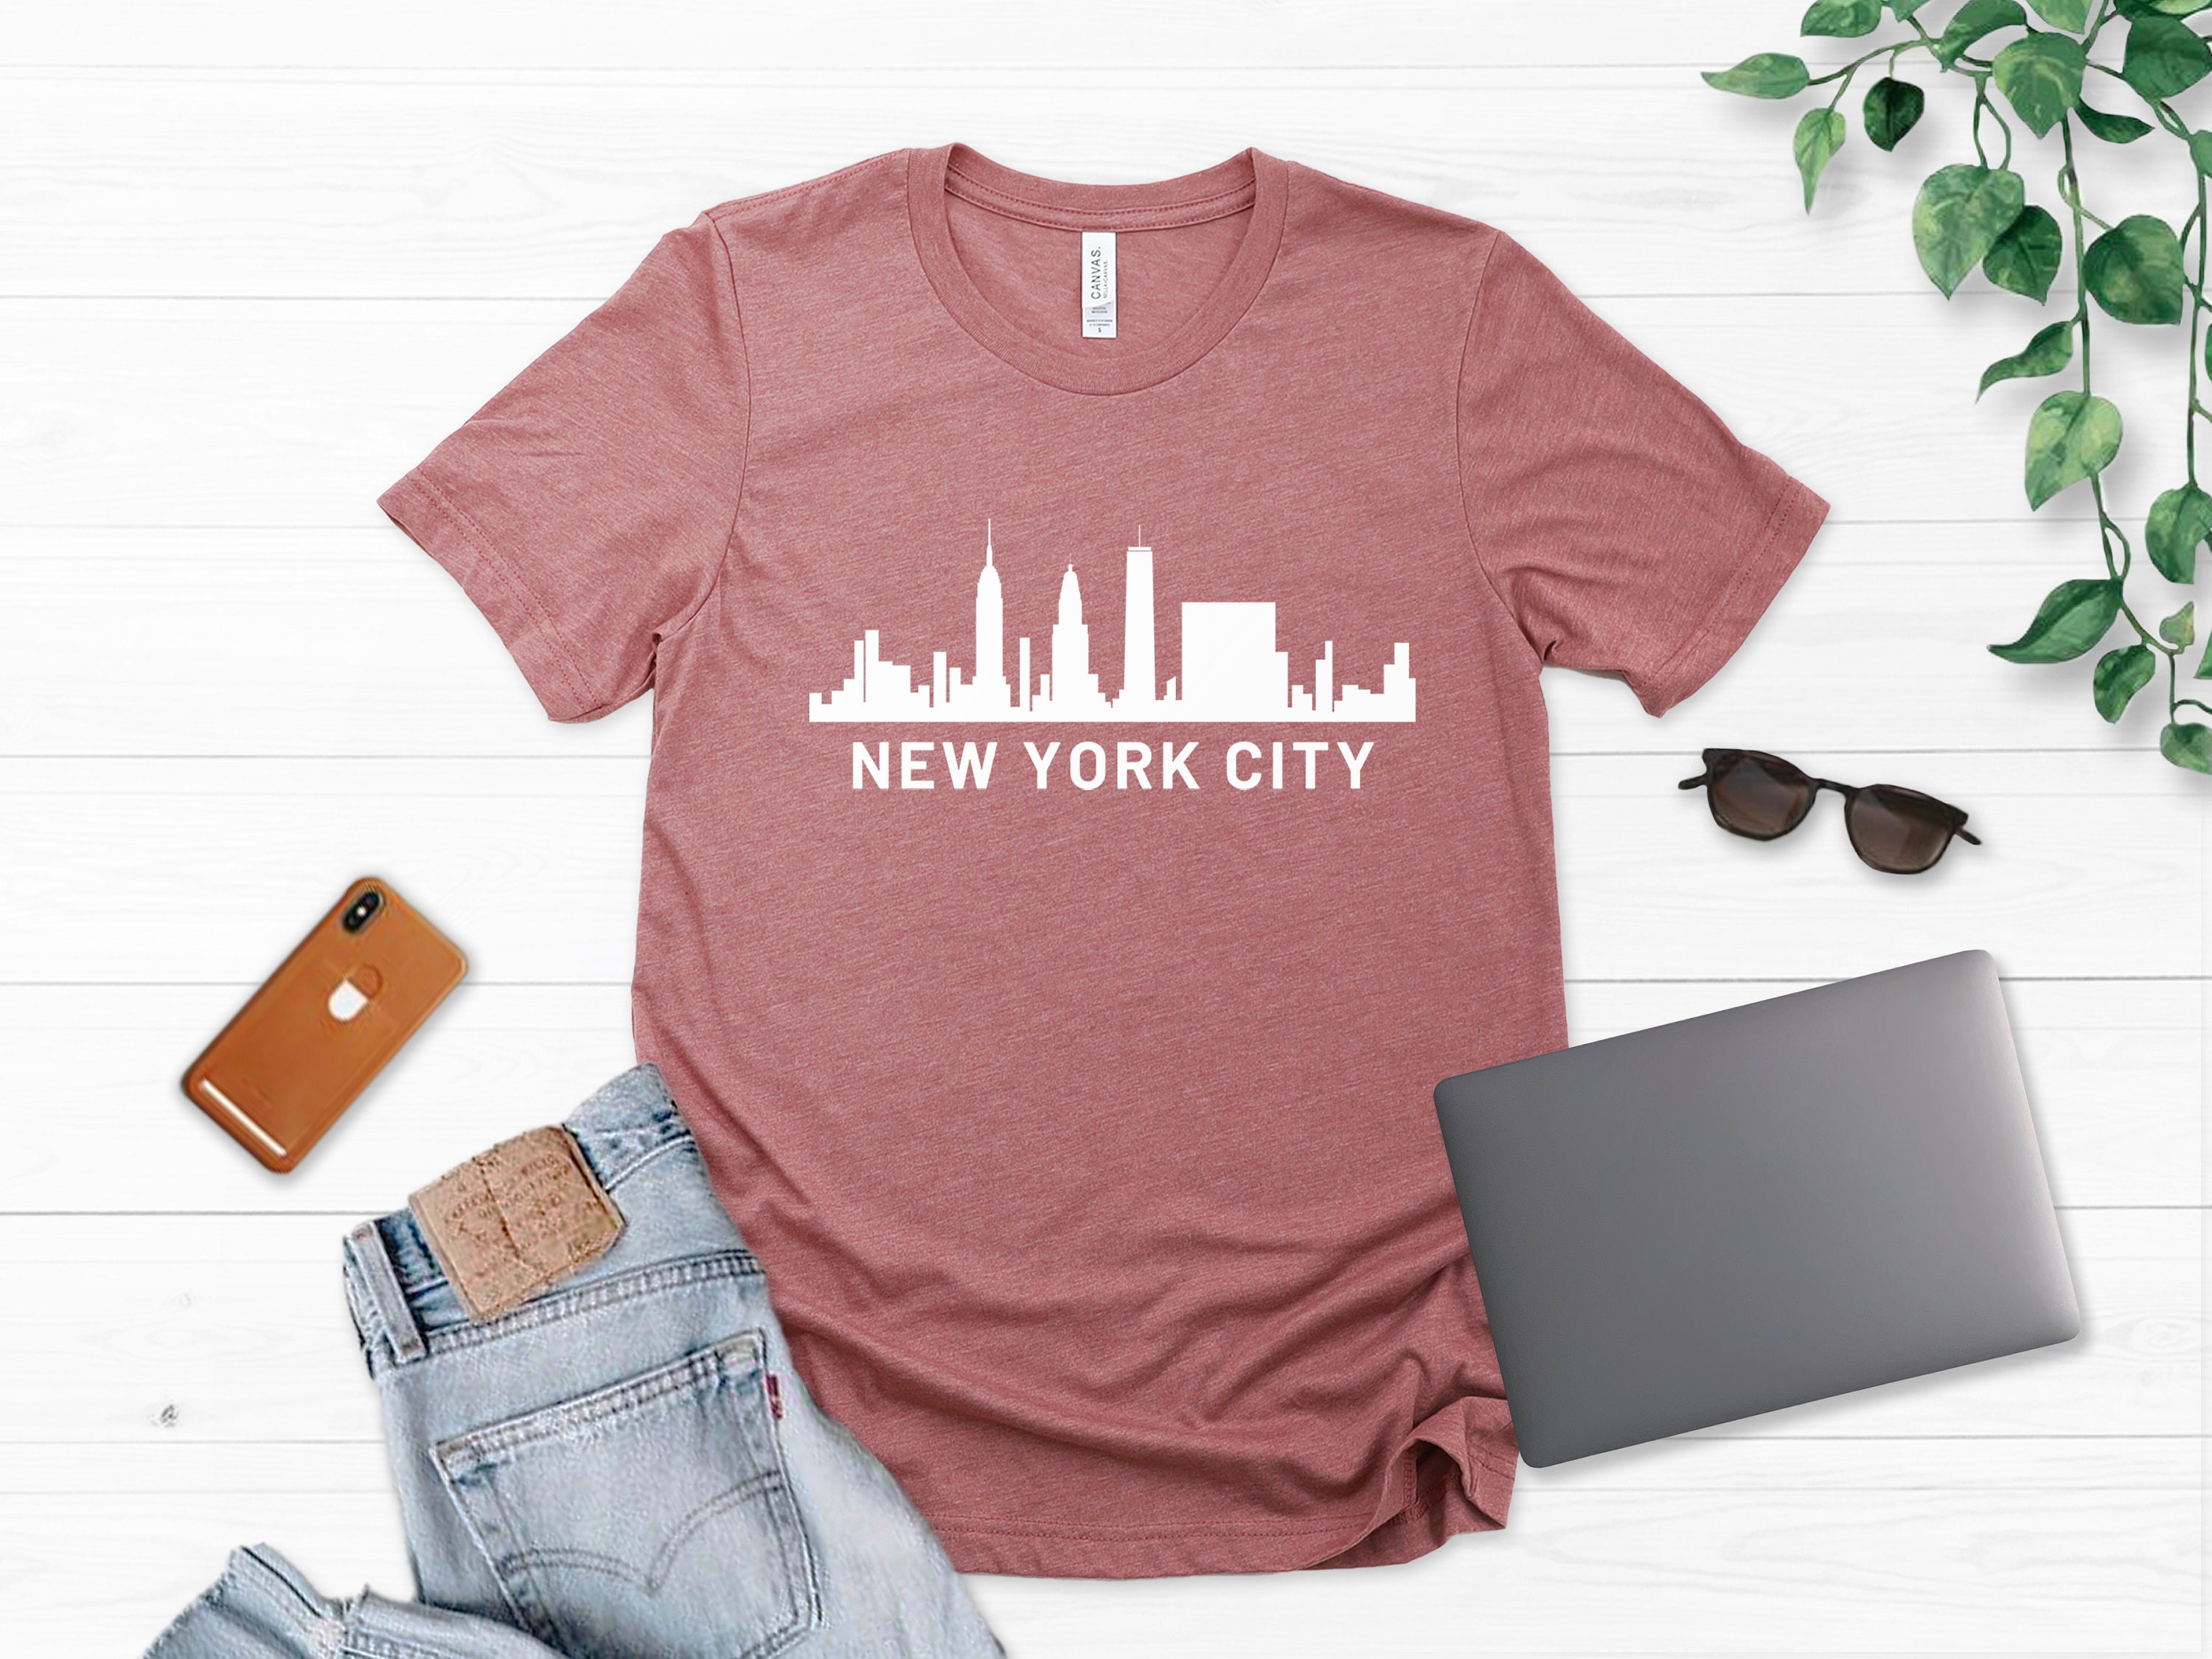 New York Shirt New York City T-shirt New York Tee Vacation | Etsy